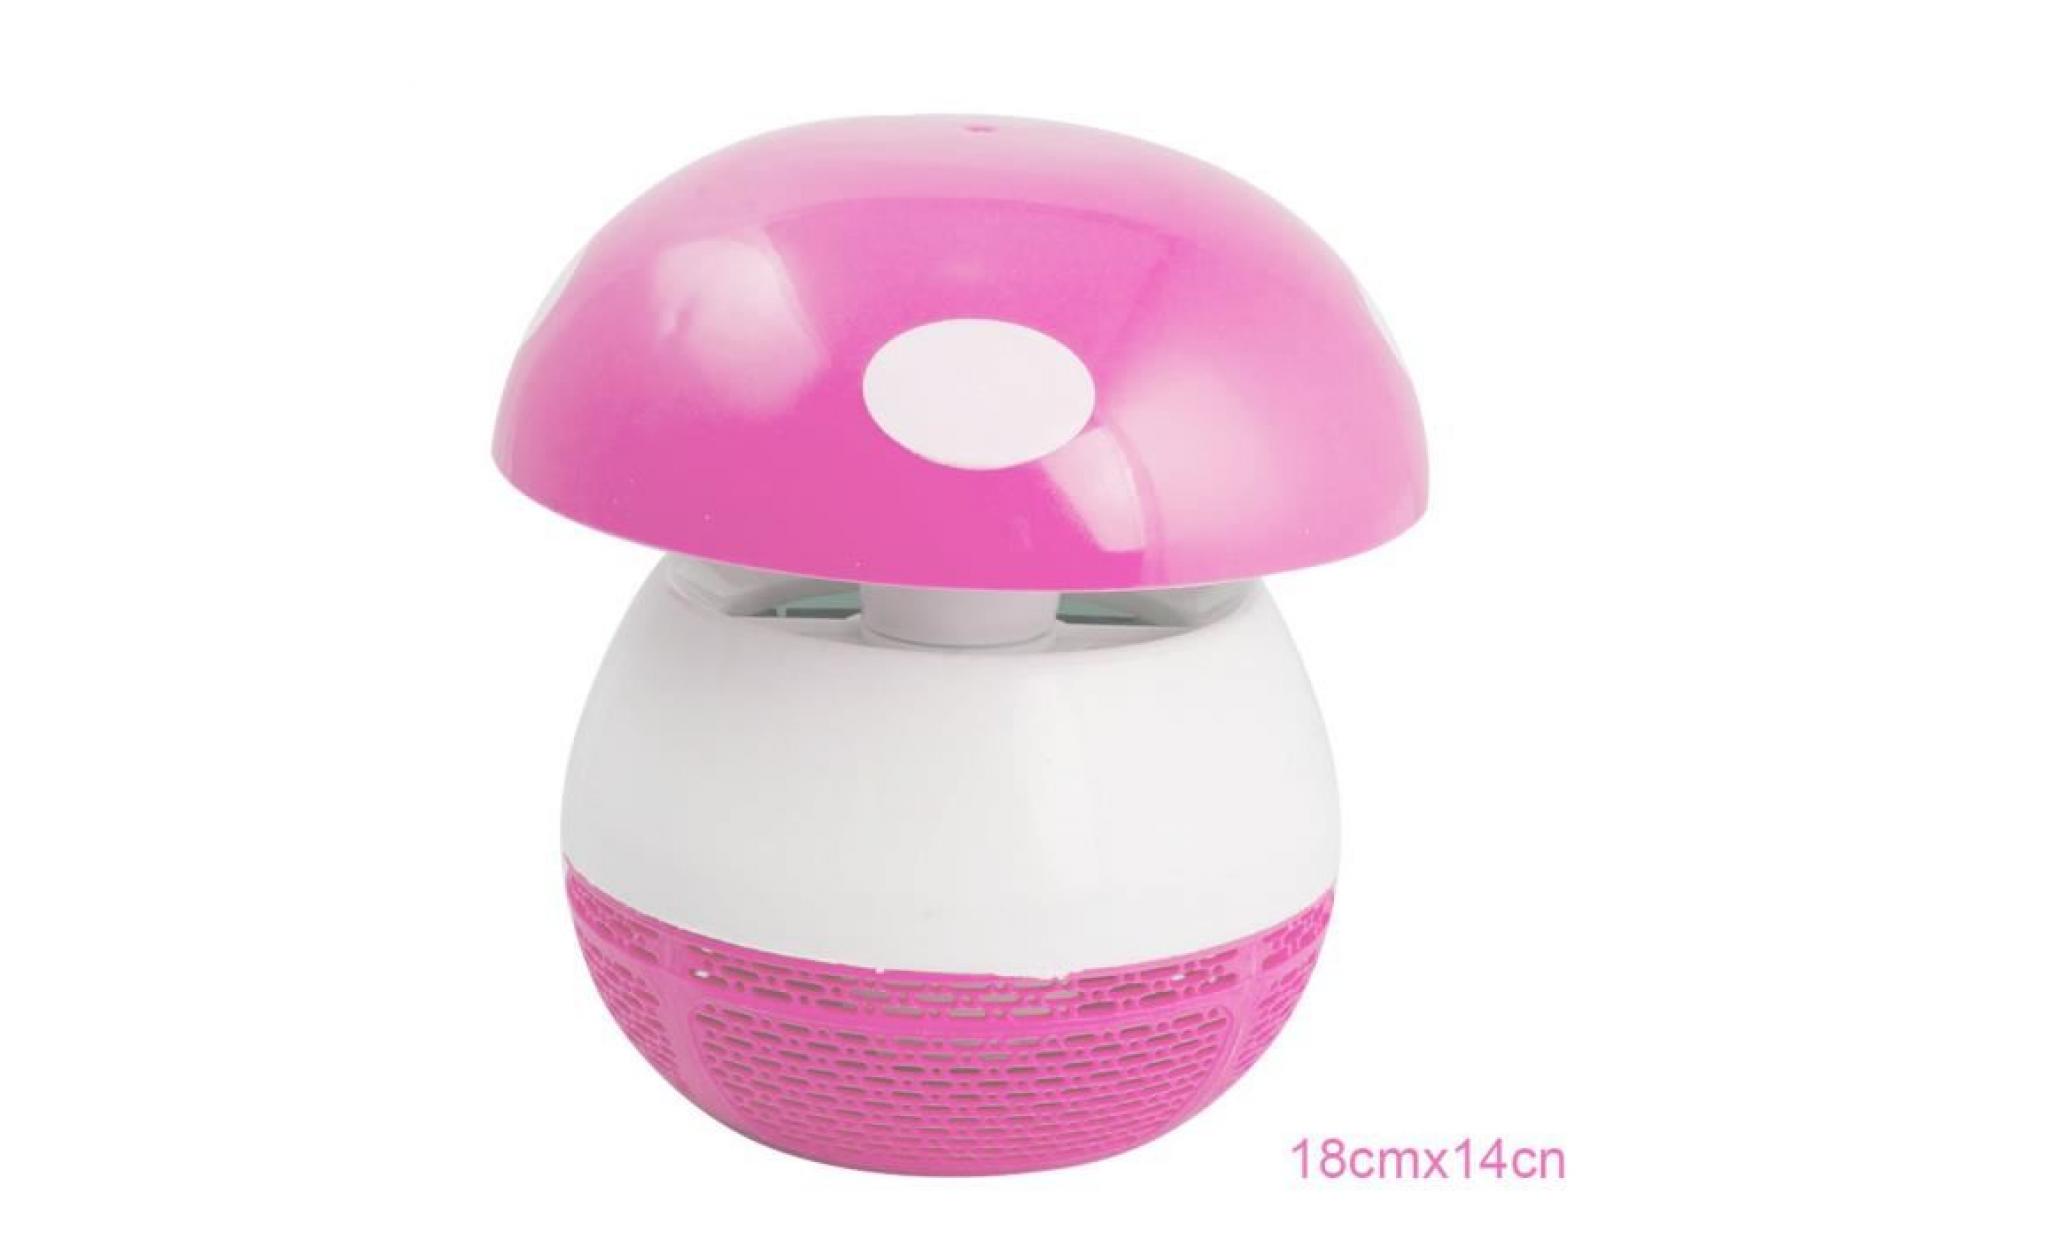 denshin inhaler à moustique lampe killer utilisation à l'intérieur cute night light silent rose pas cher